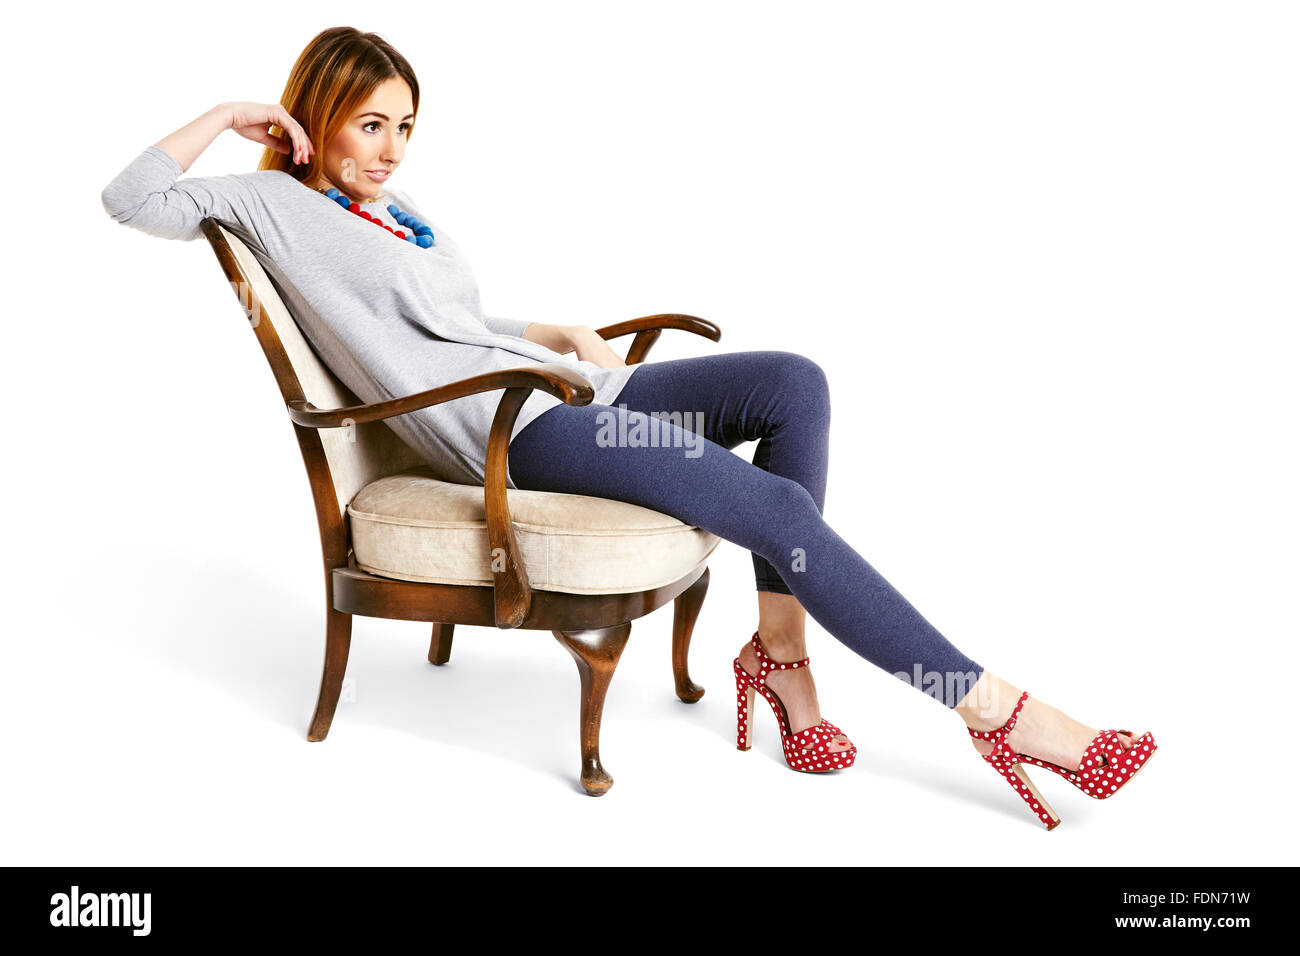 Junge Frau sitzt auf einem Stuhl Oldschool mit gezogenen Bein entspannt und fröhlich lächelnd. Stockfoto